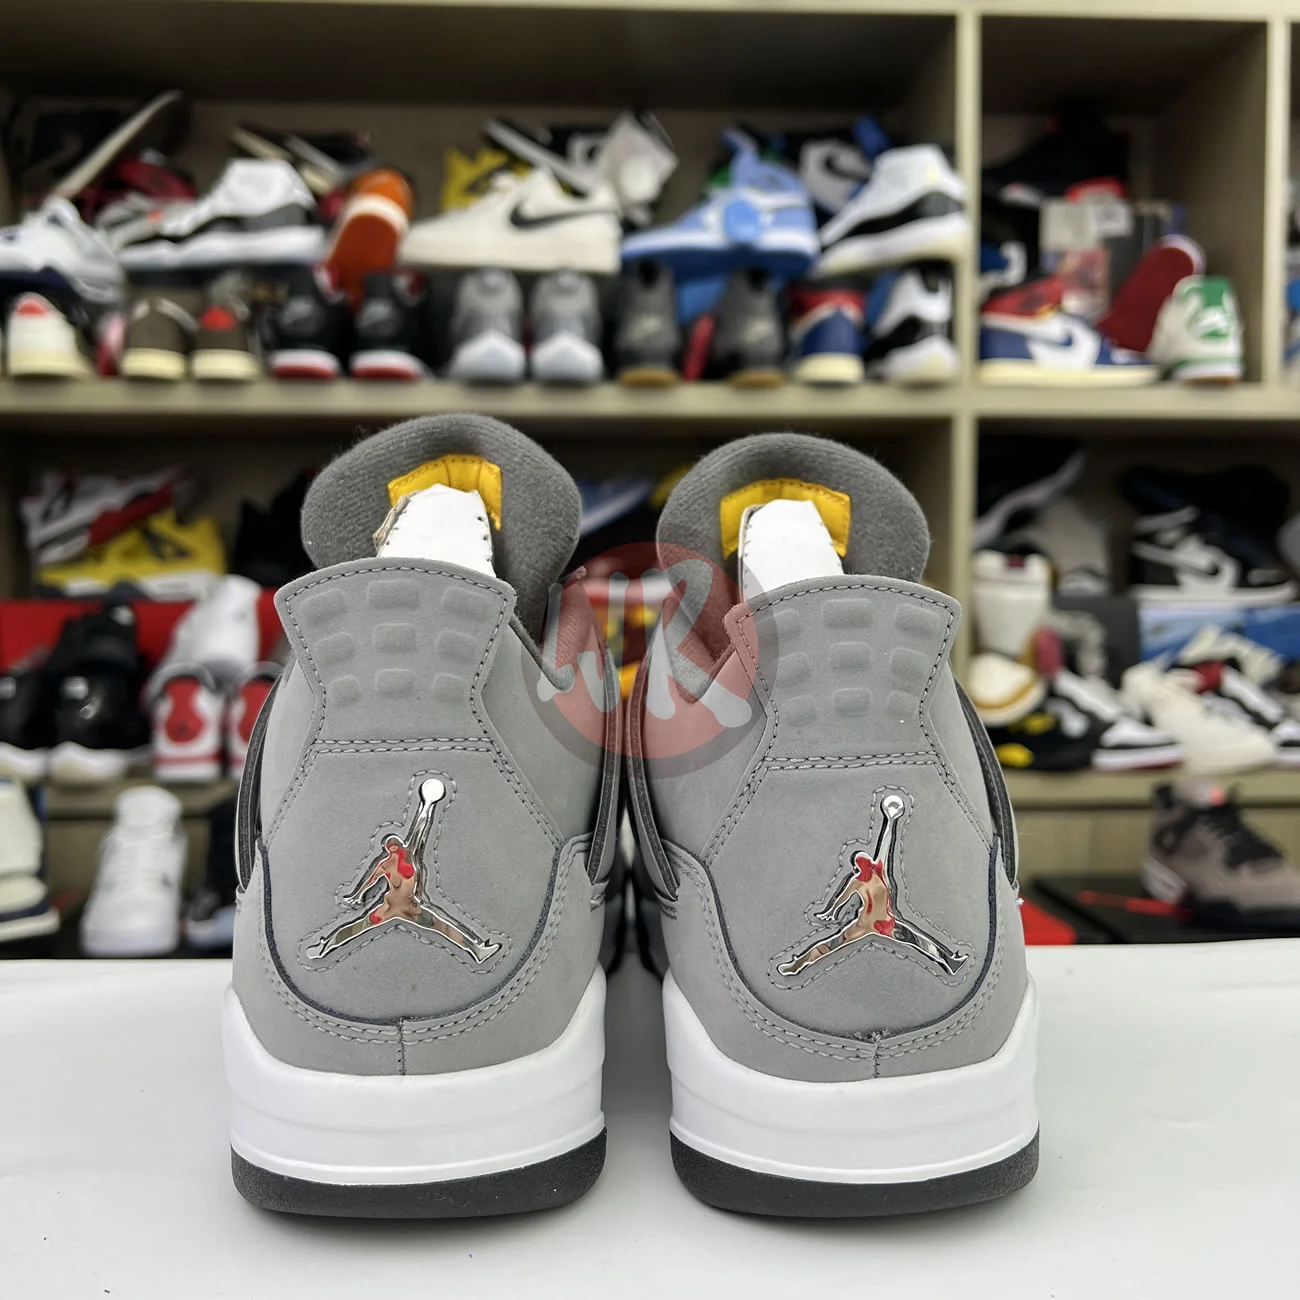 Air Jordan 4 Retro Cool Grey 2019 308497 007 Ljr Sneakers (21) - bc-ljr.net